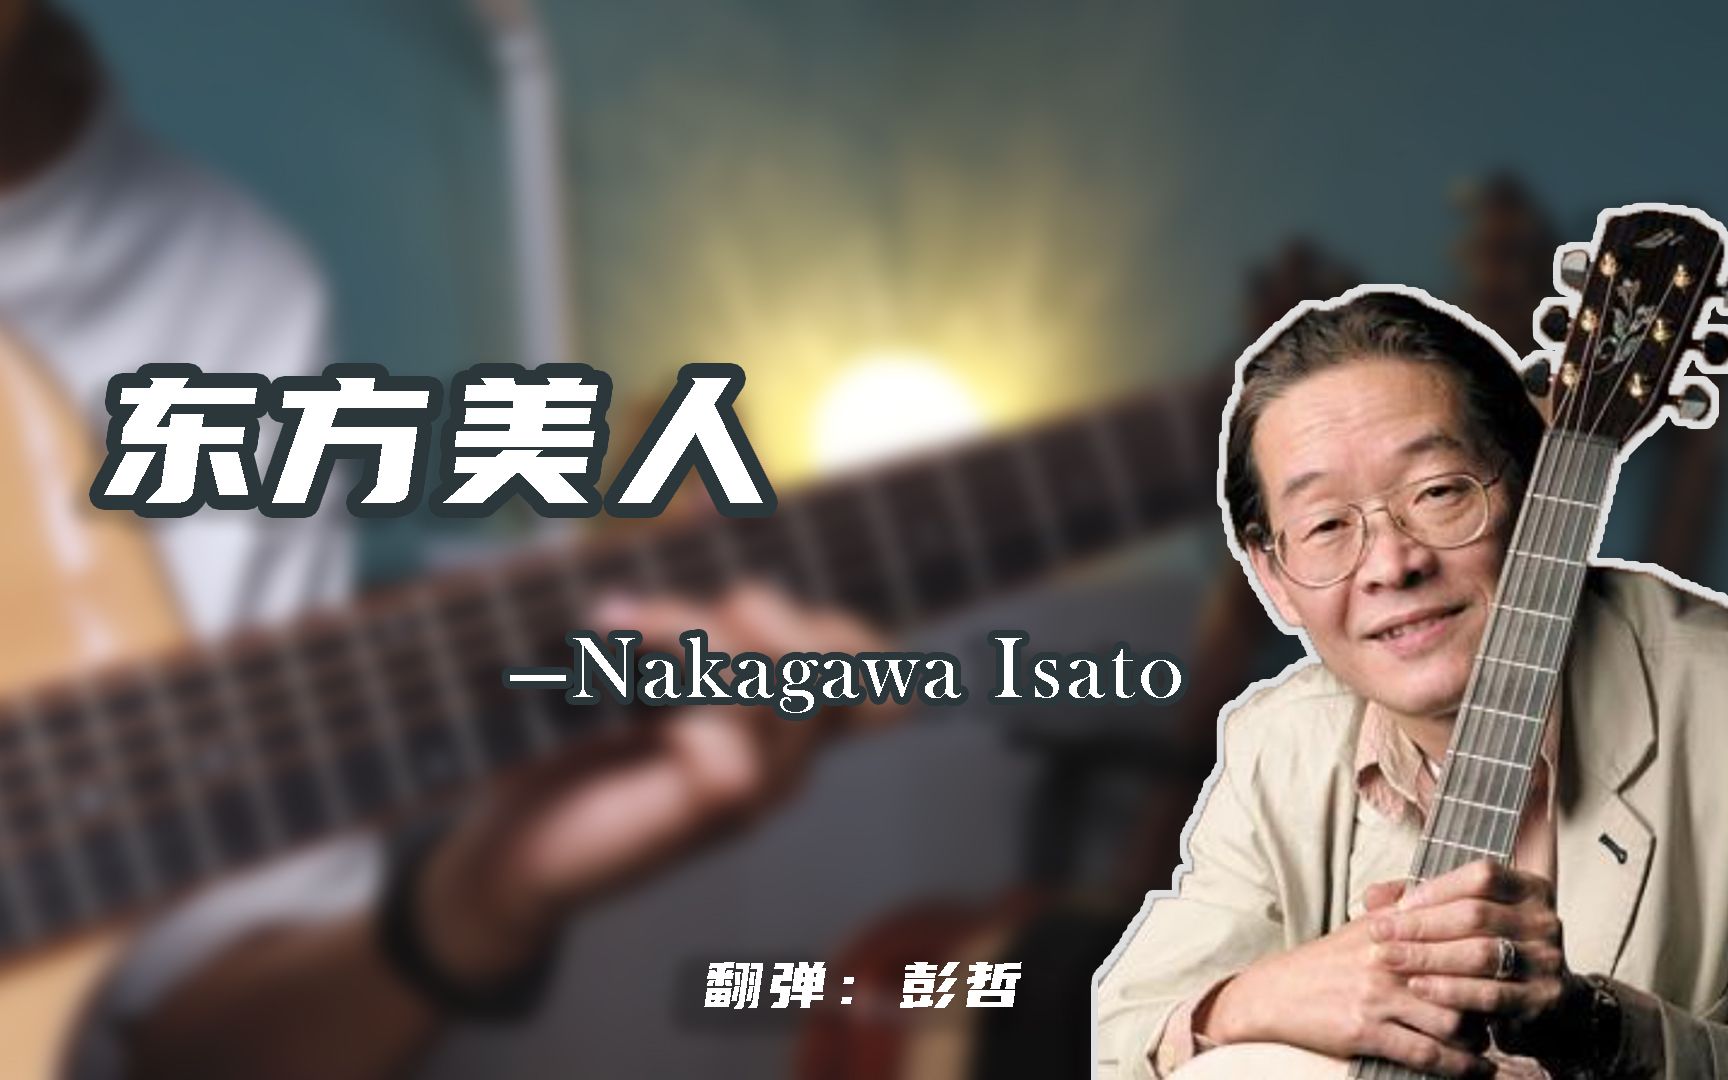 【宝藏曲目】极致的东方韵味指弹曲《东方美人》——中川砂仁（Nakagawa Isato）